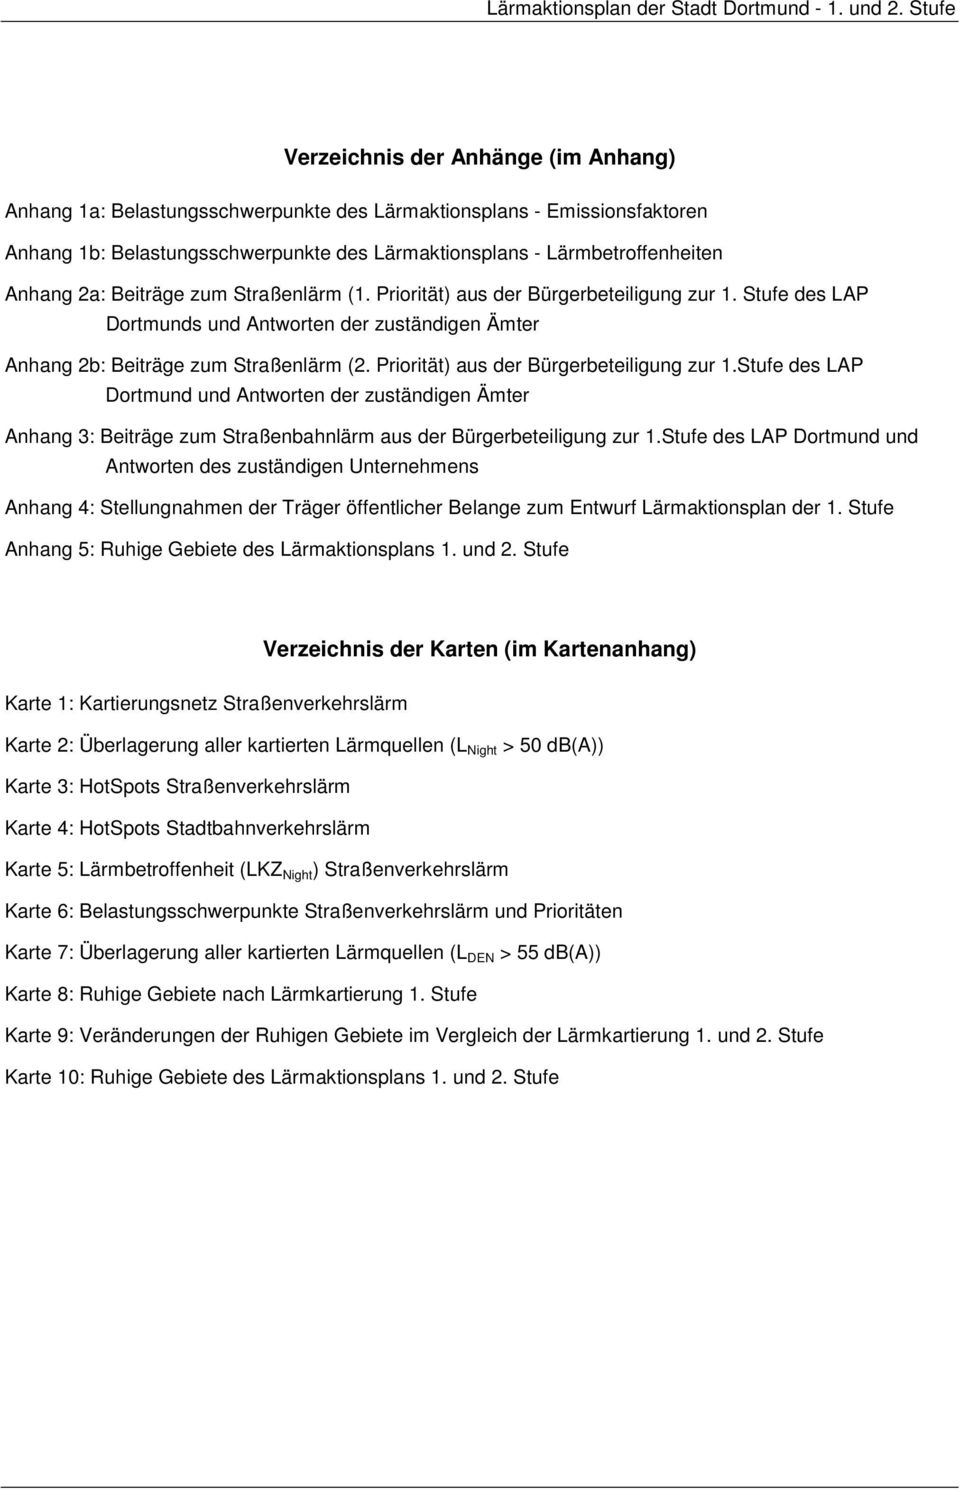 Priorität) aus der Bürgerbeteiligung zur 1.Stufe des LAP Dortmund und Antworten der zuständigen Ämter Anhang 3: Beiträge zum Straßenbahnlärm aus der Bürgerbeteiligung zur 1.